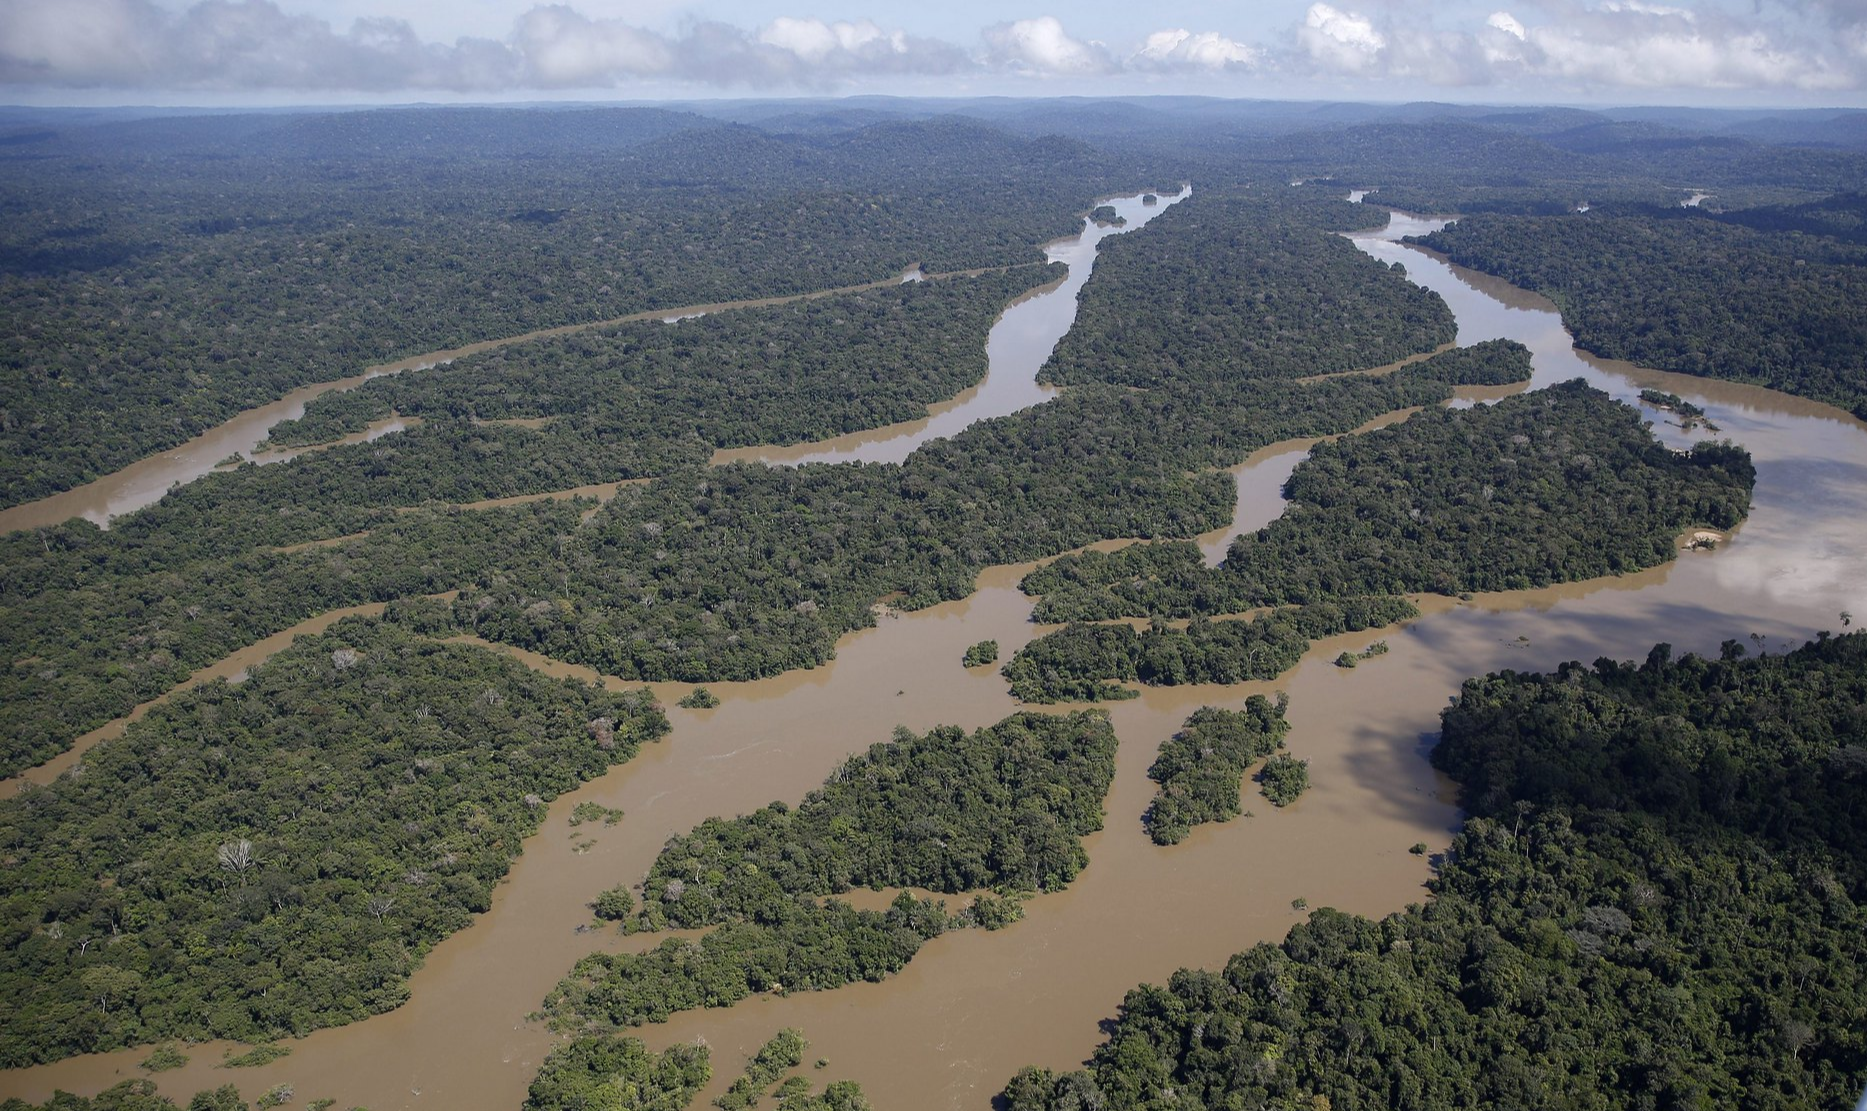 Governo de ocupação alardeia que "a Amazônia é nossa", mas na verdade trabalha para entregar nossa maior riqueza aos EUA e as transnacionais